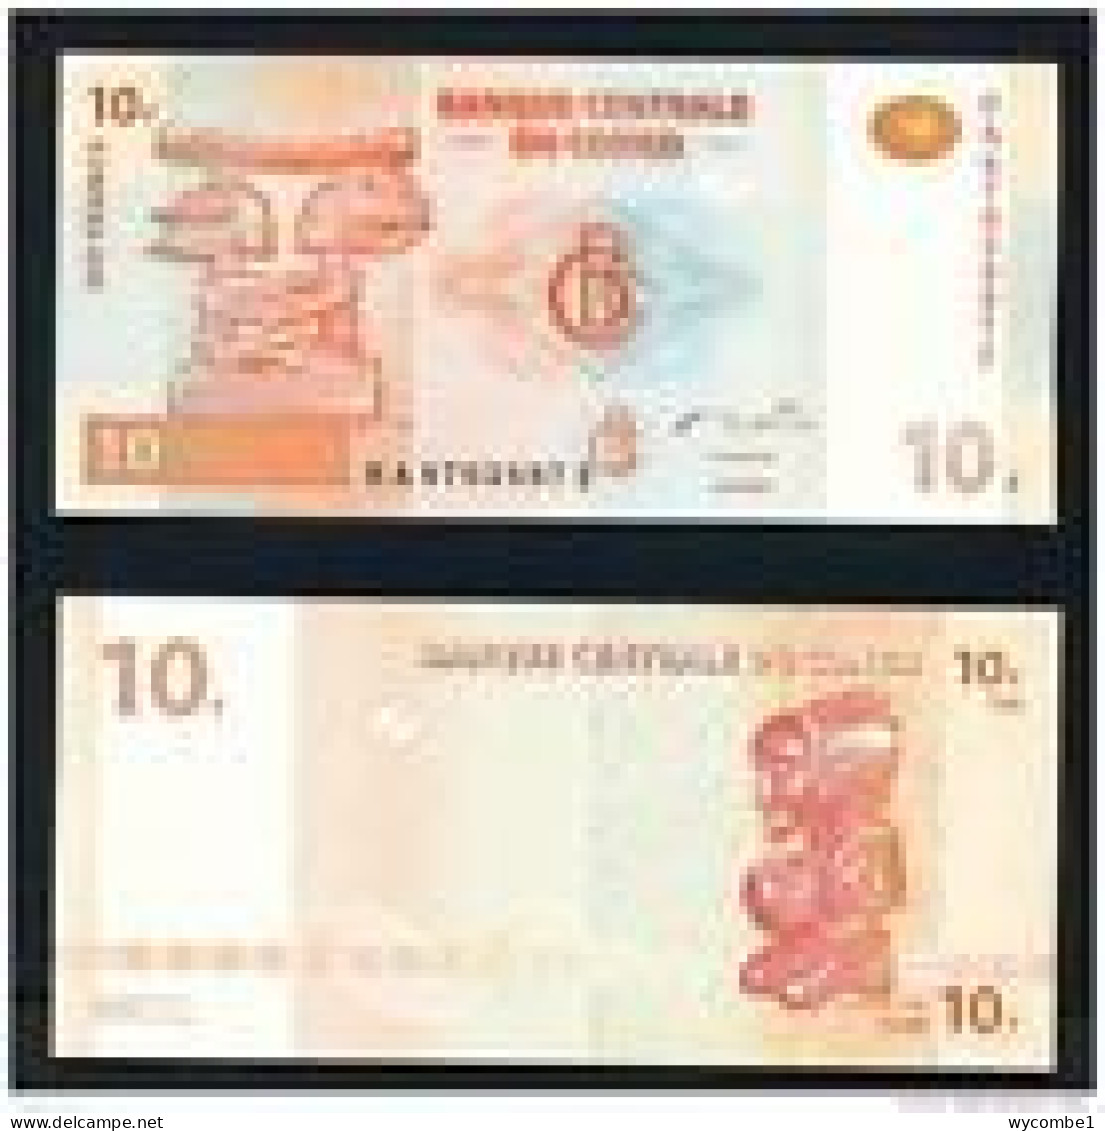 CONGO DR  -  2003 10 Francs UNC  Banknote - République Démocratique Du Congo & Zaïre